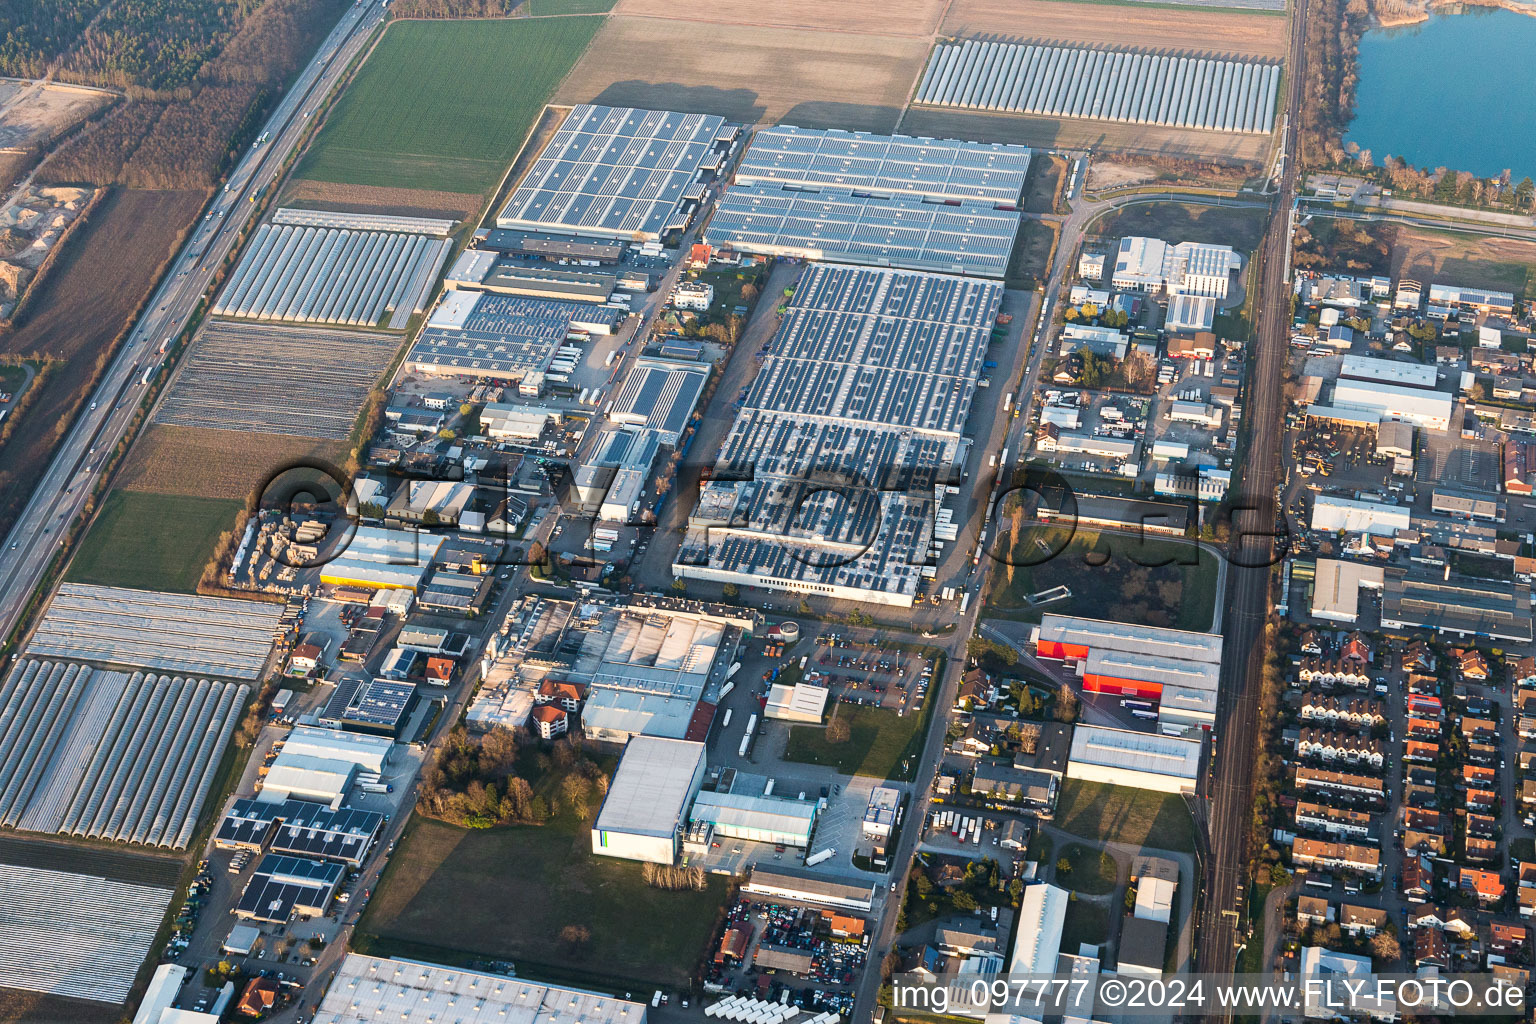 Luftbild von Industrie- und Gewerbegebiet an der A5 mit IHLE tires GmbH in Muggensturm im Bundesland Baden-Württemberg, Deutschland